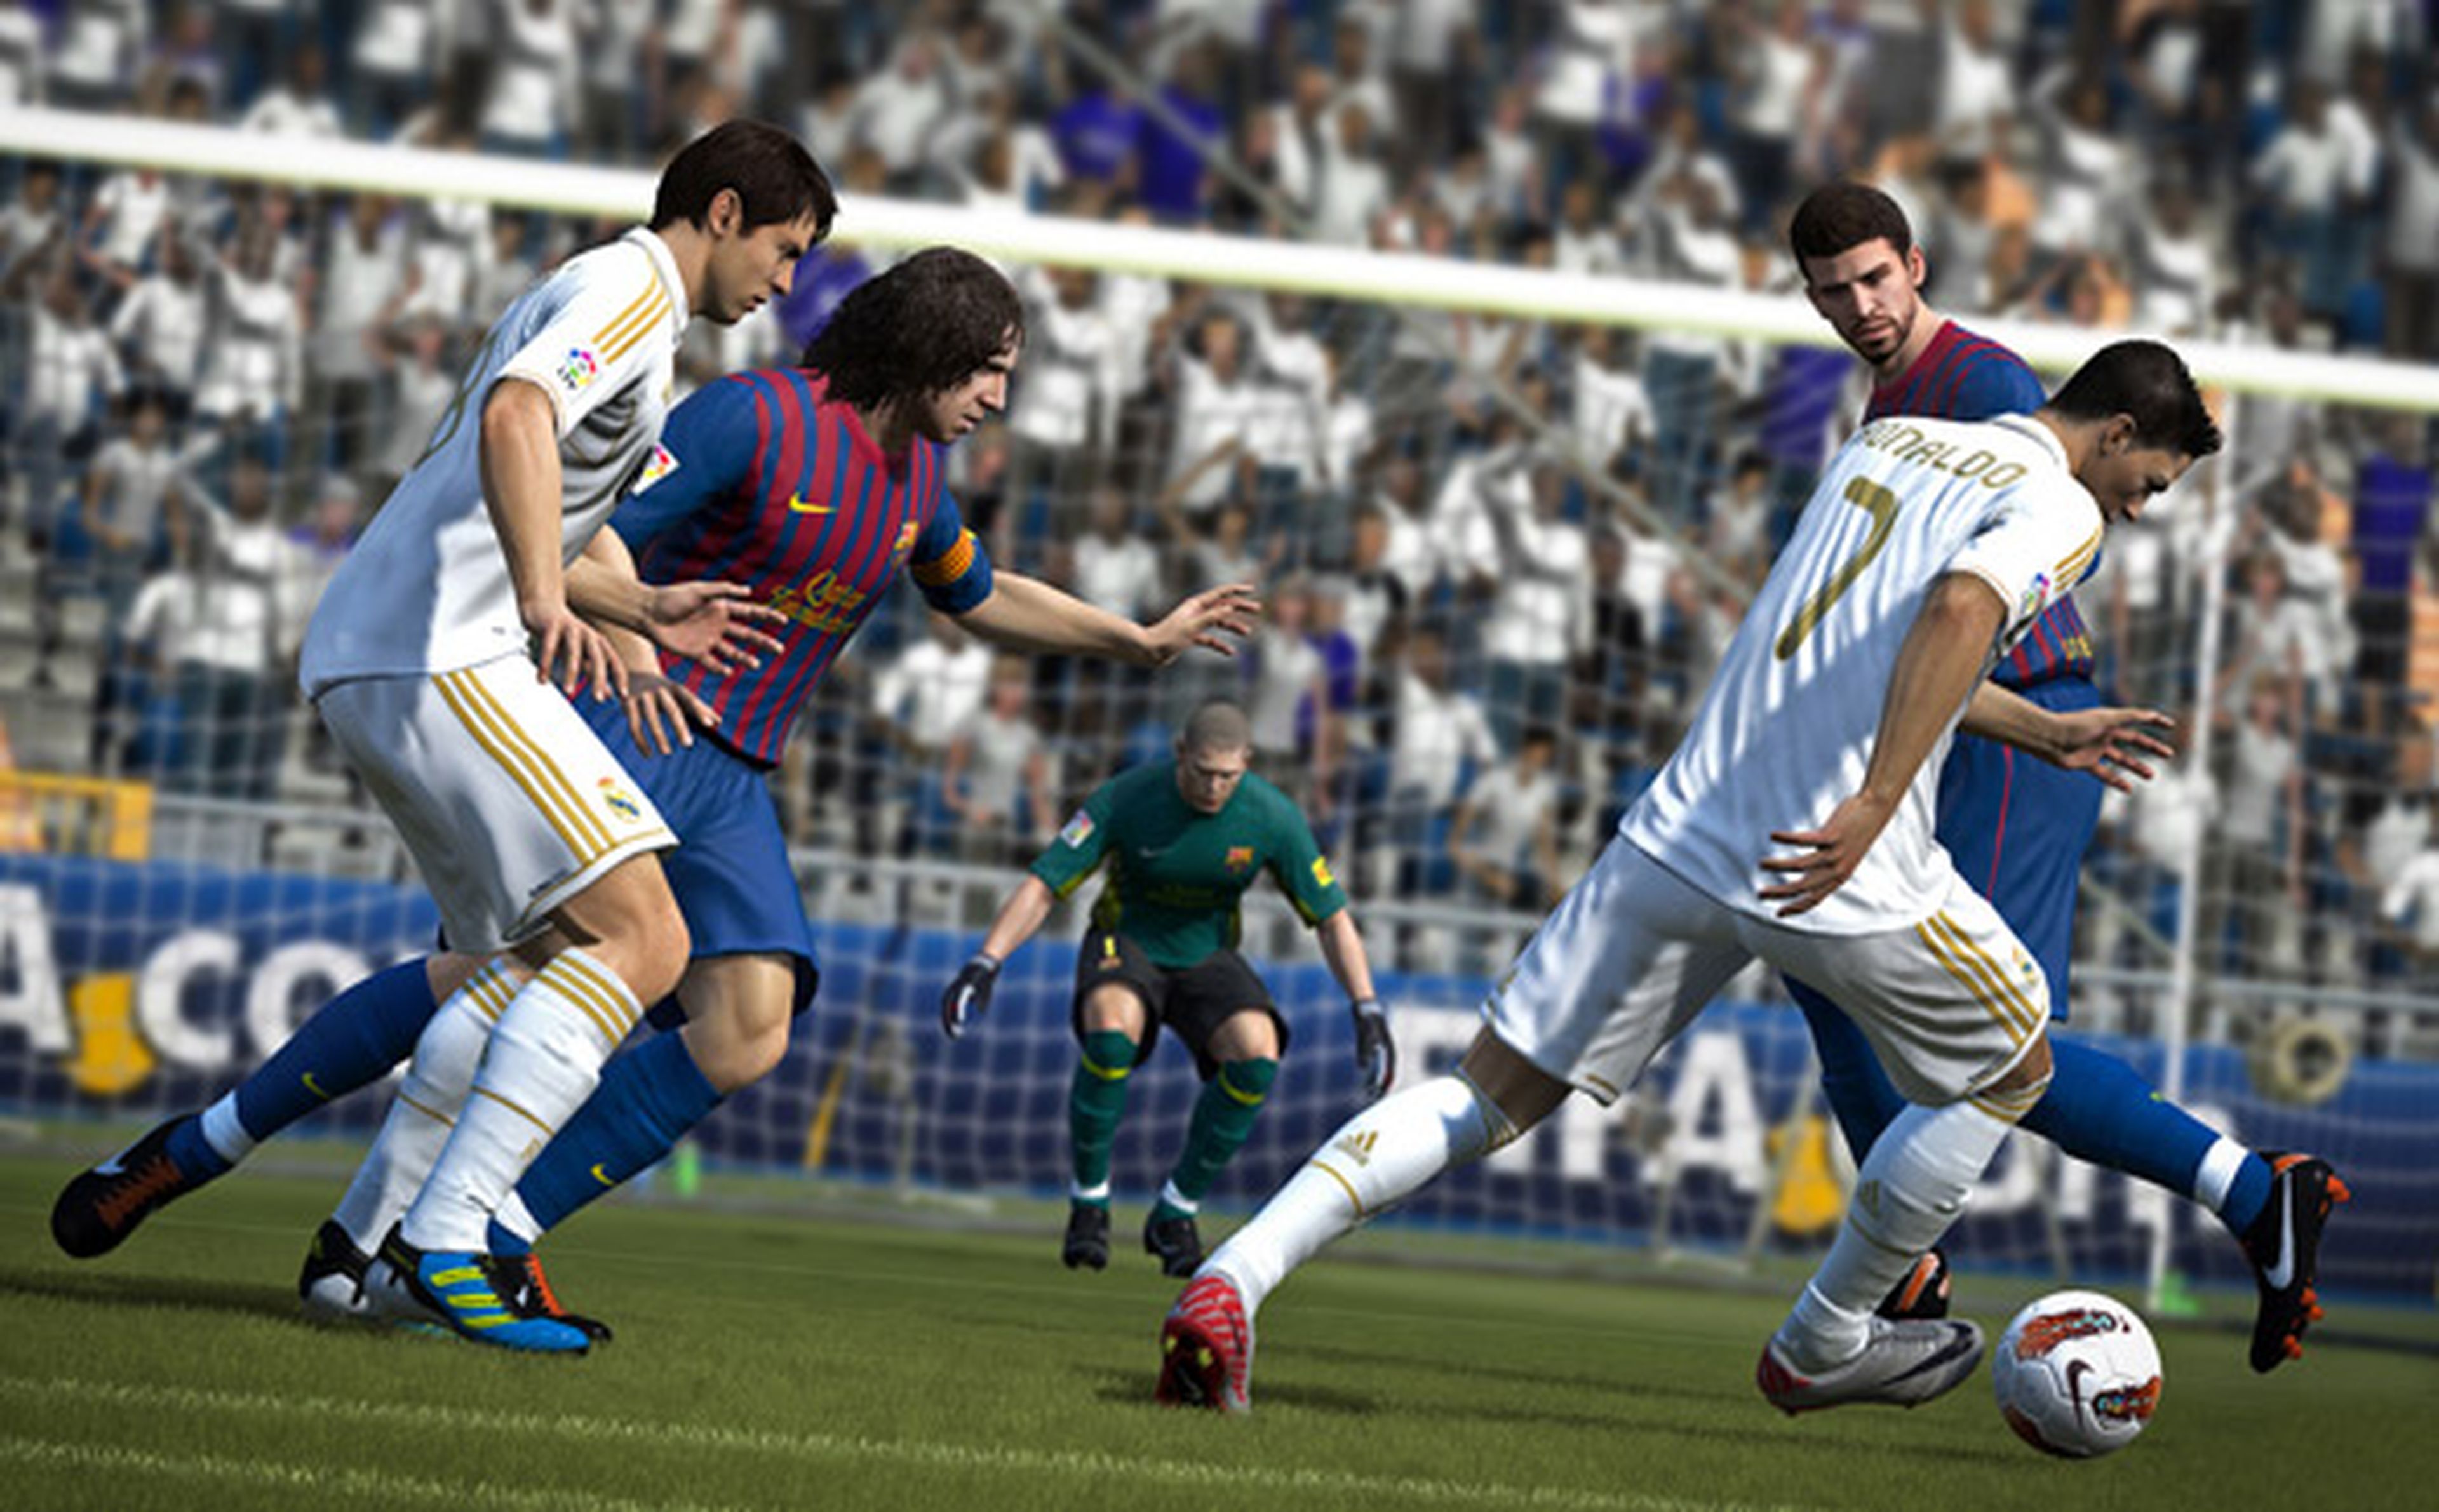 Las ventas de FIFA 12 en su primera semana